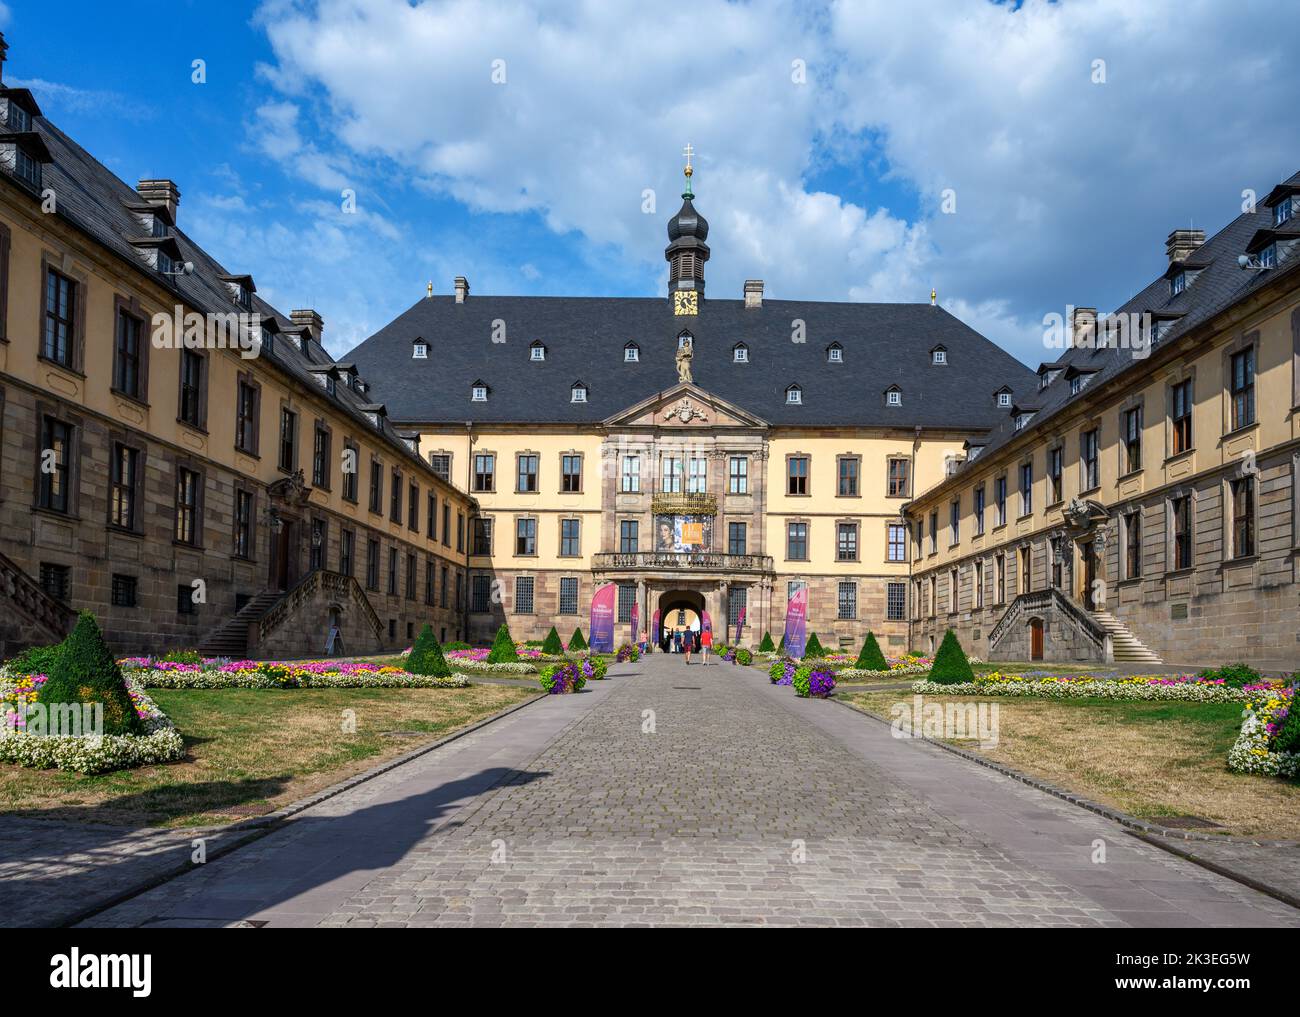 Le Stadtschloss (Château de la ville), la vieille ville (Altstadt), Fulda, Allemagne Banque D'Images